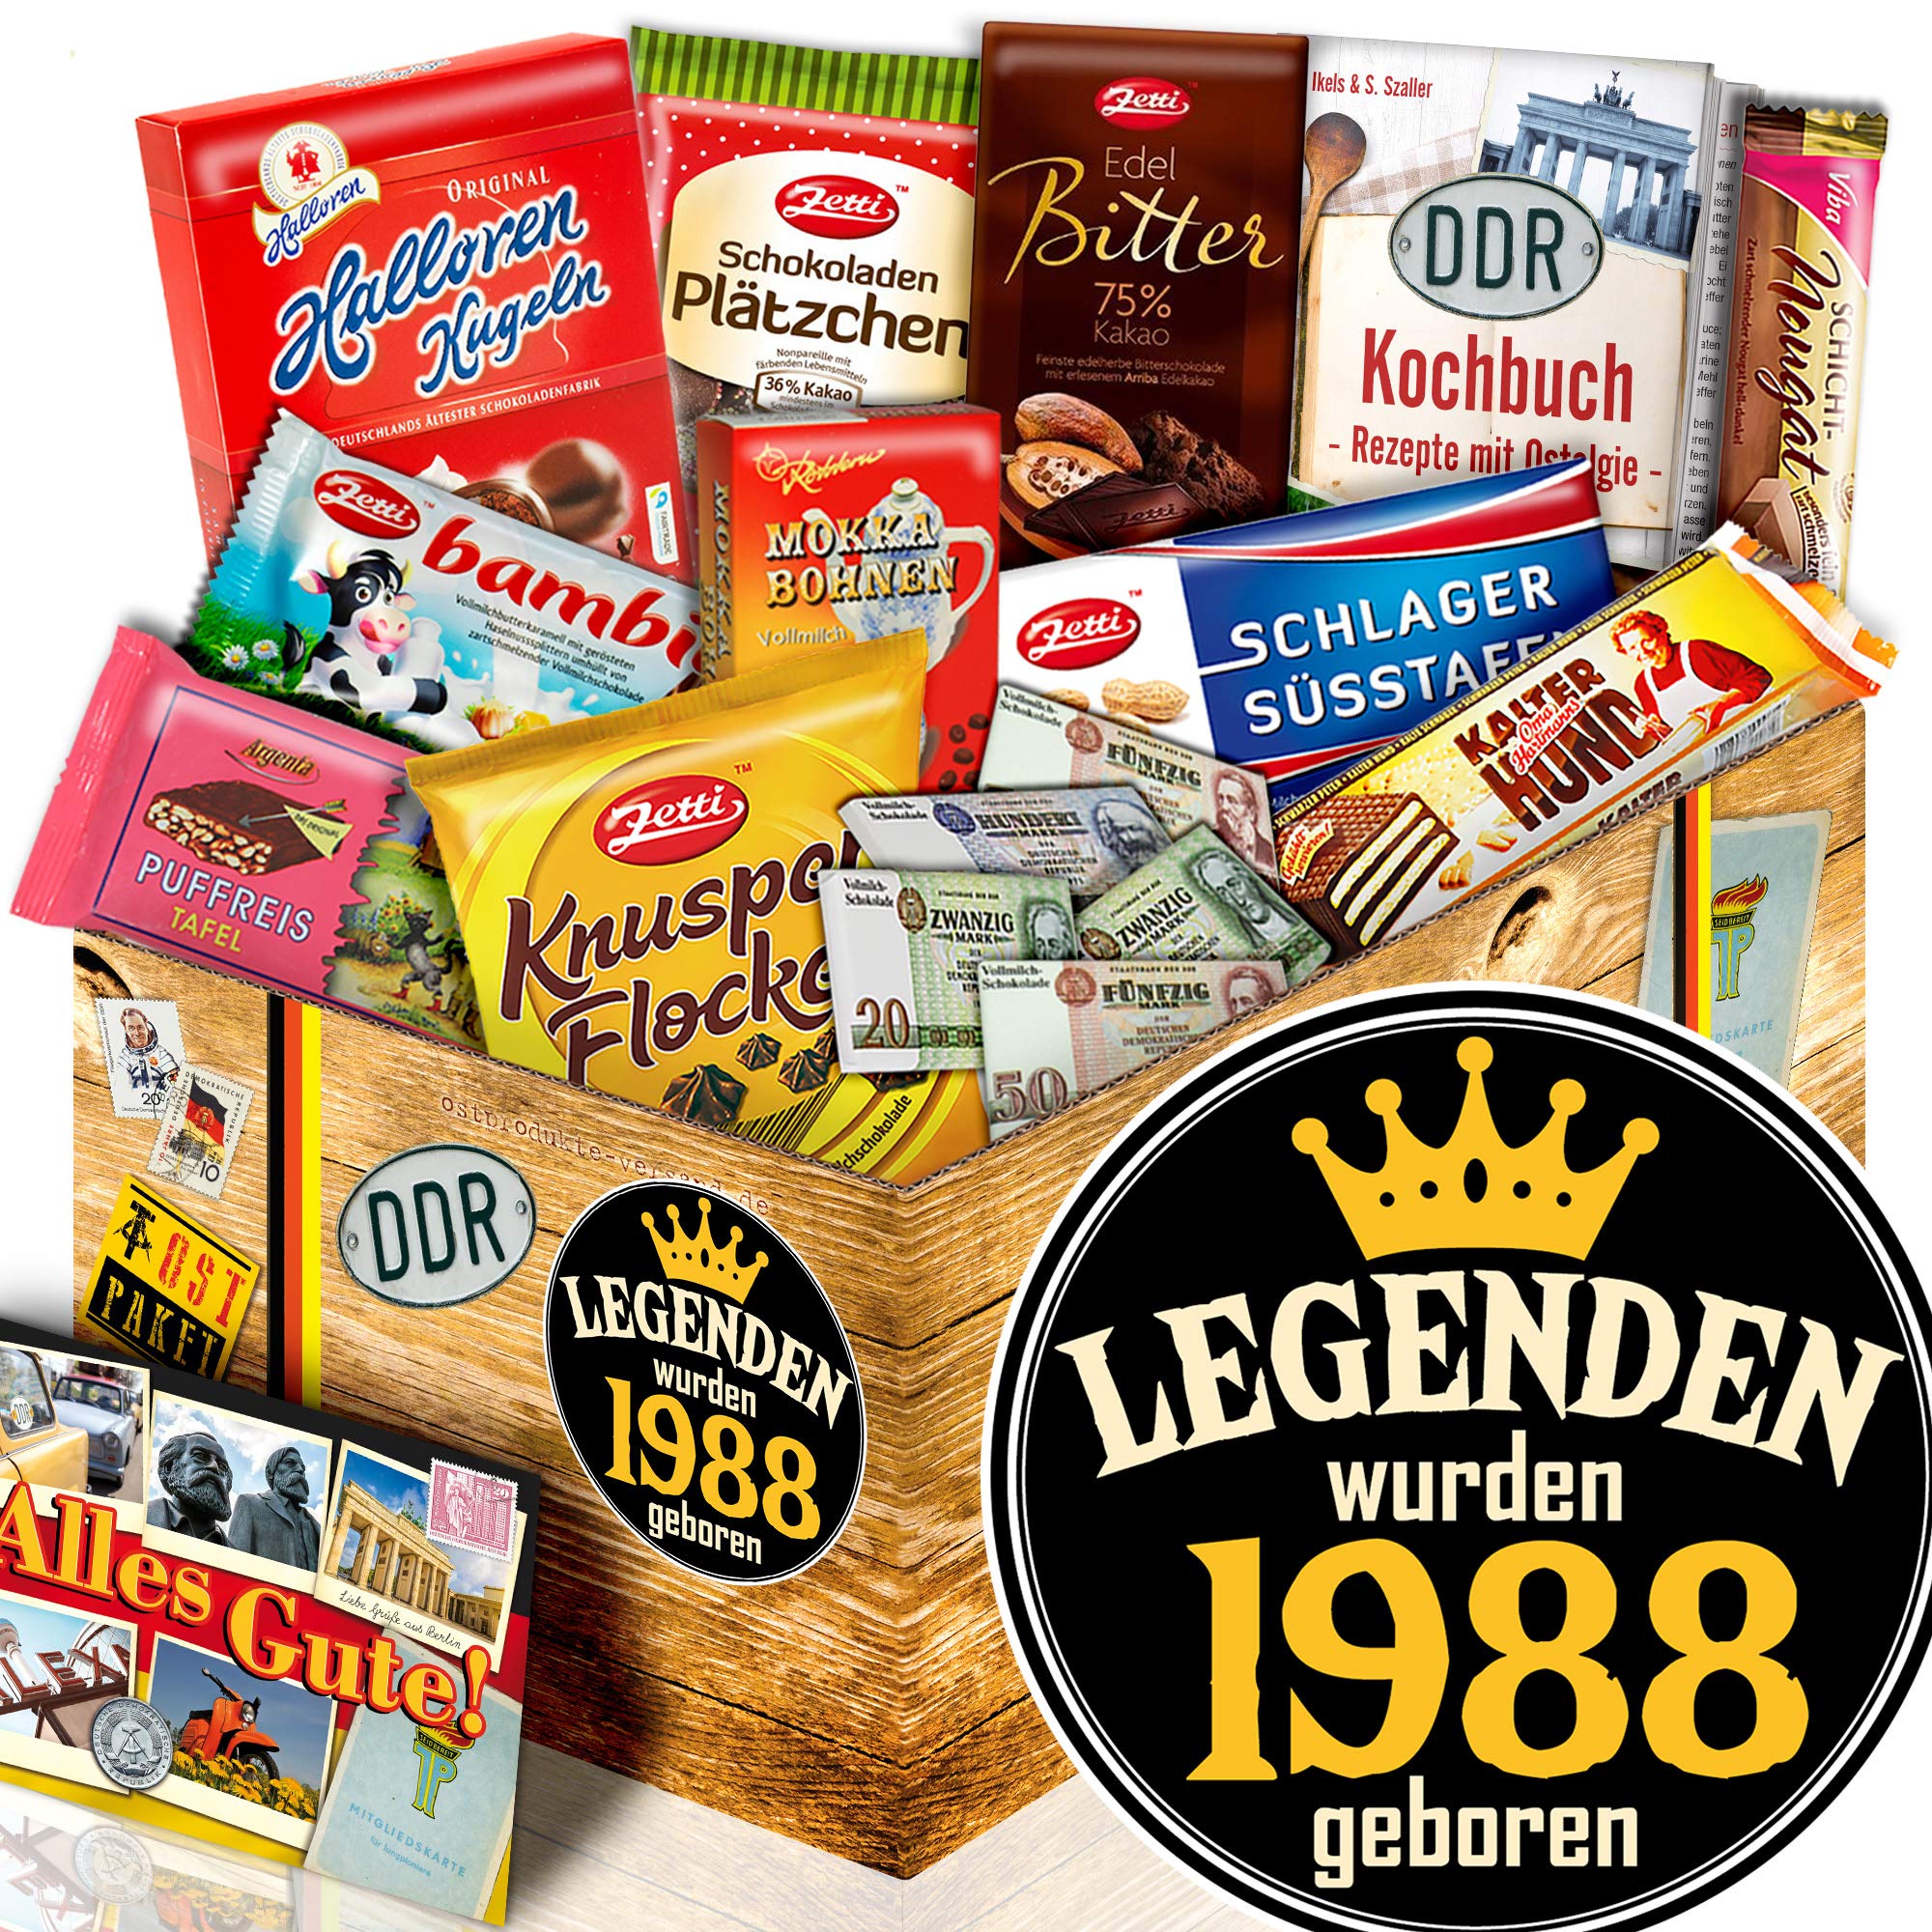 ostprodukte-versand Legenden 1988 / DDR Schokolade Ostpaket/Ehemann Geburtstagsgeschenk